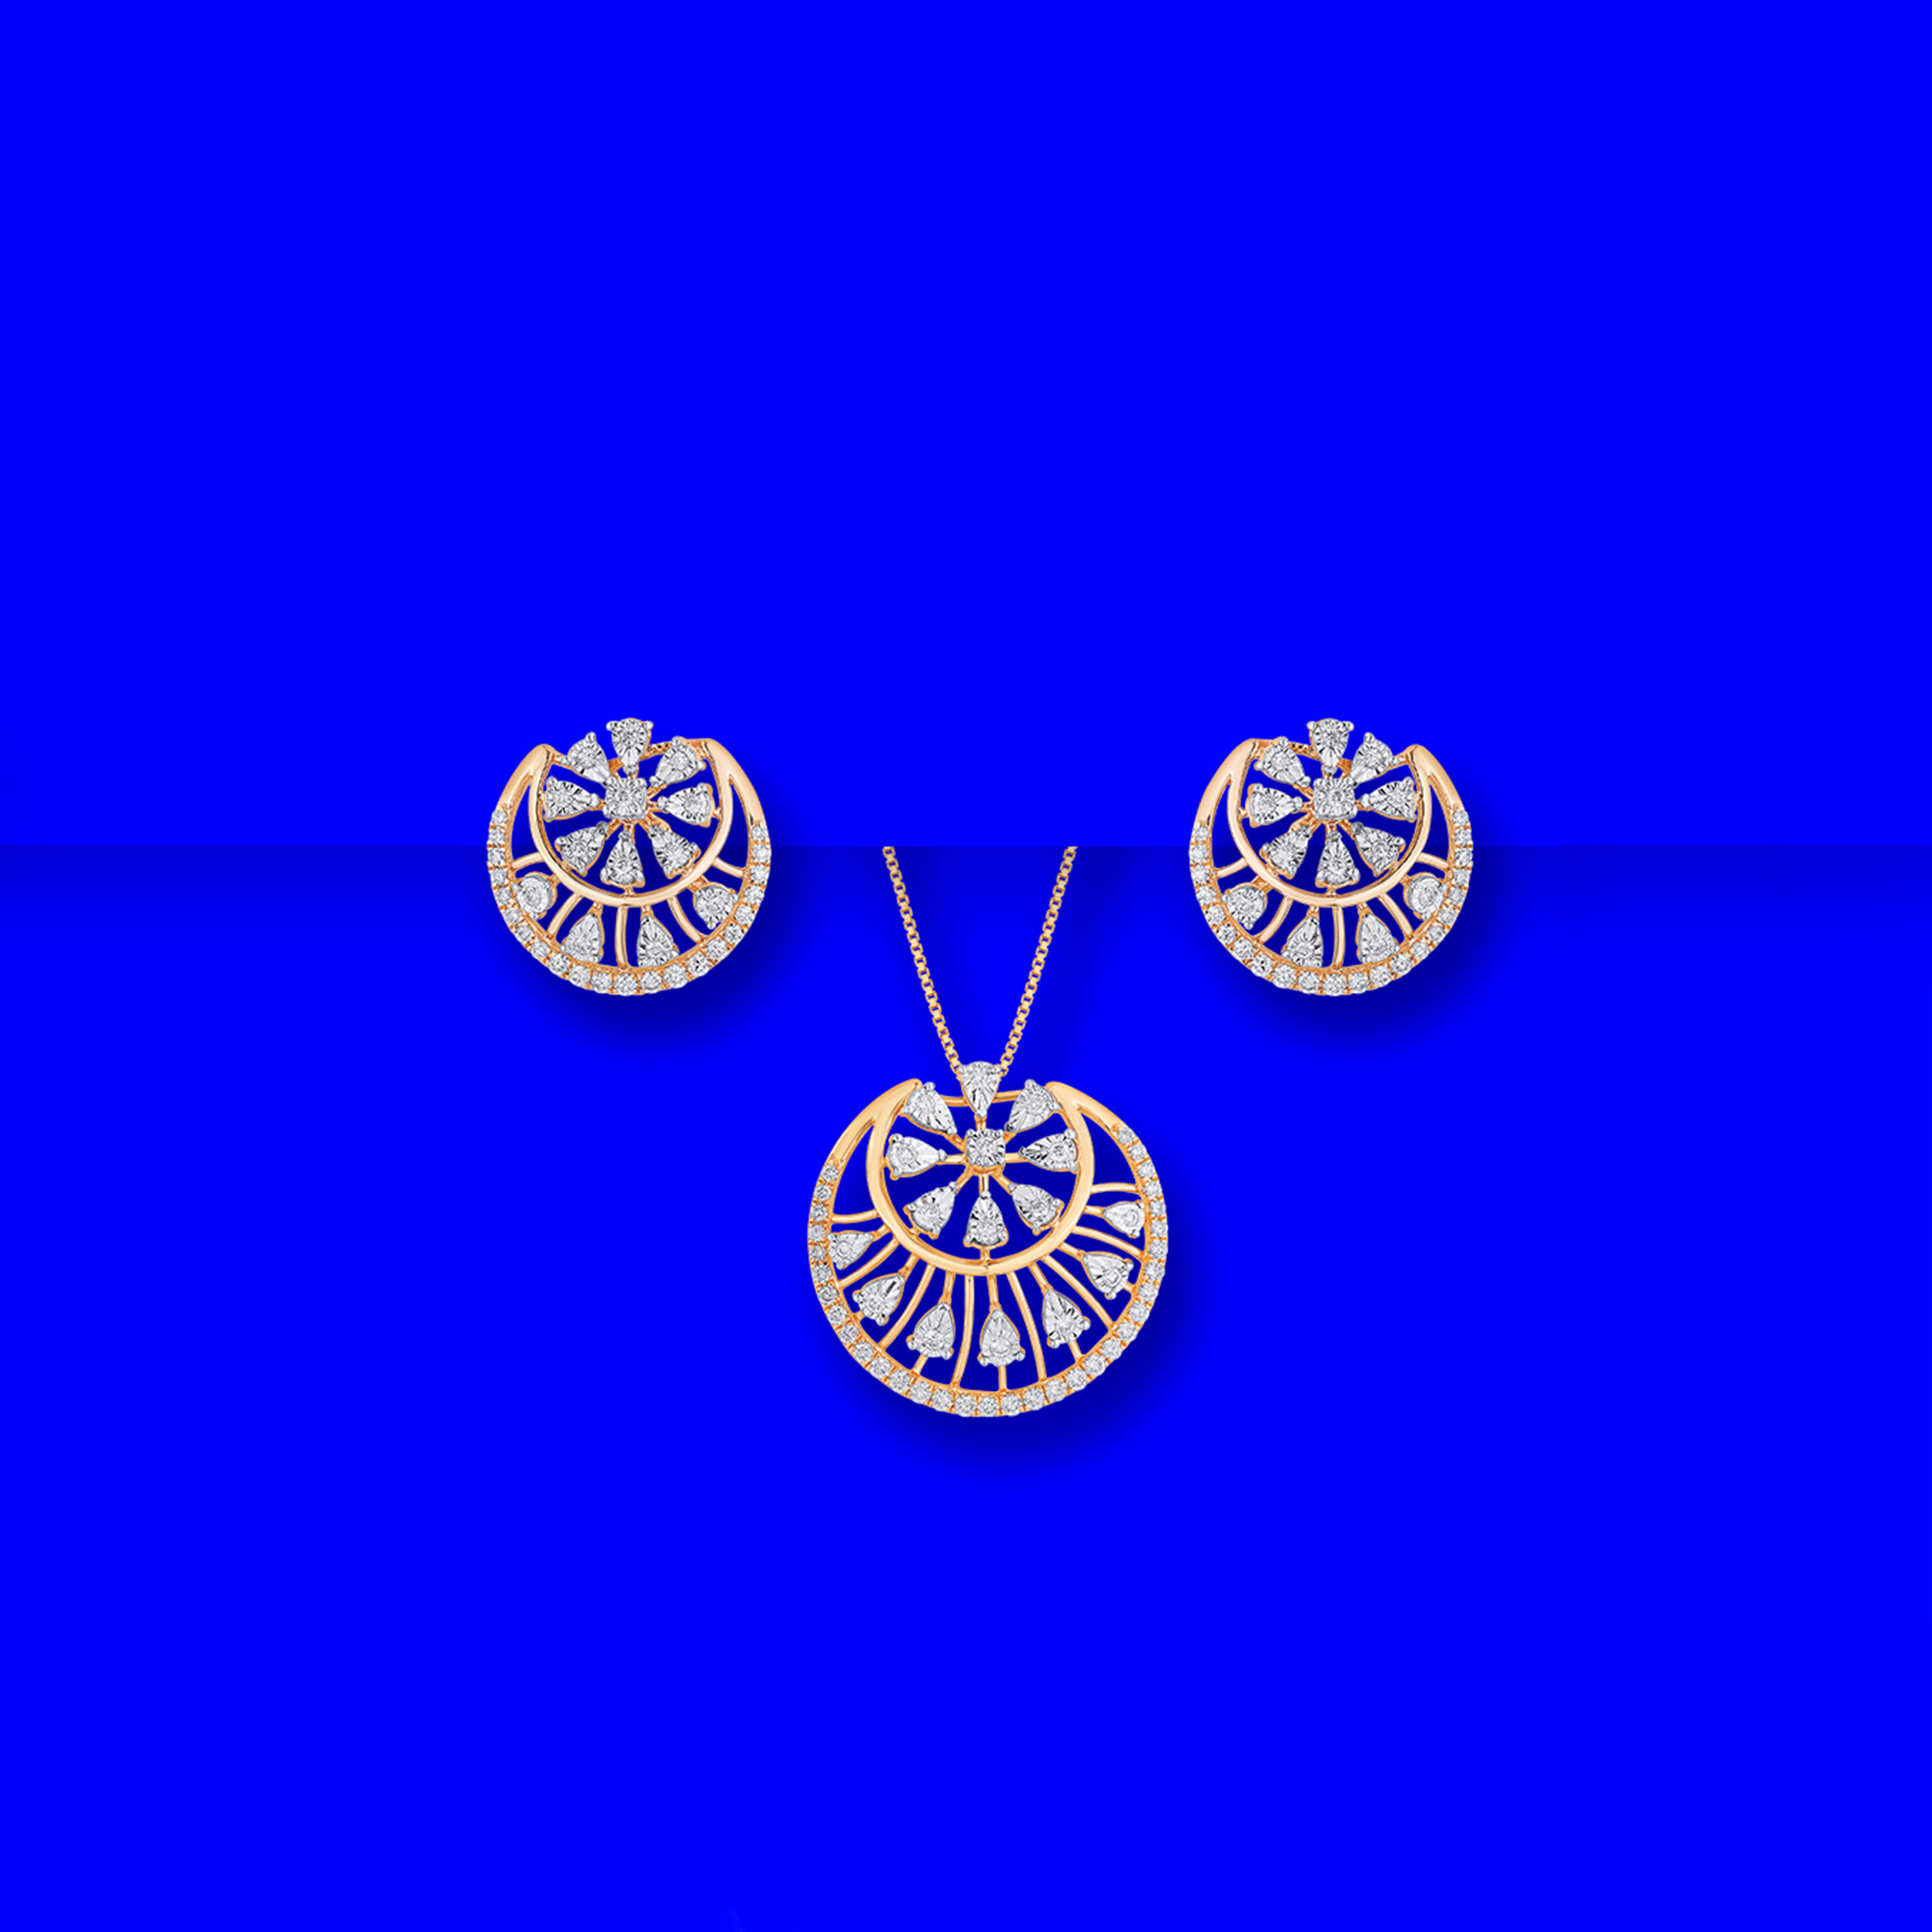 18K RG Diamond Pendant Earring Set (Chain not included)